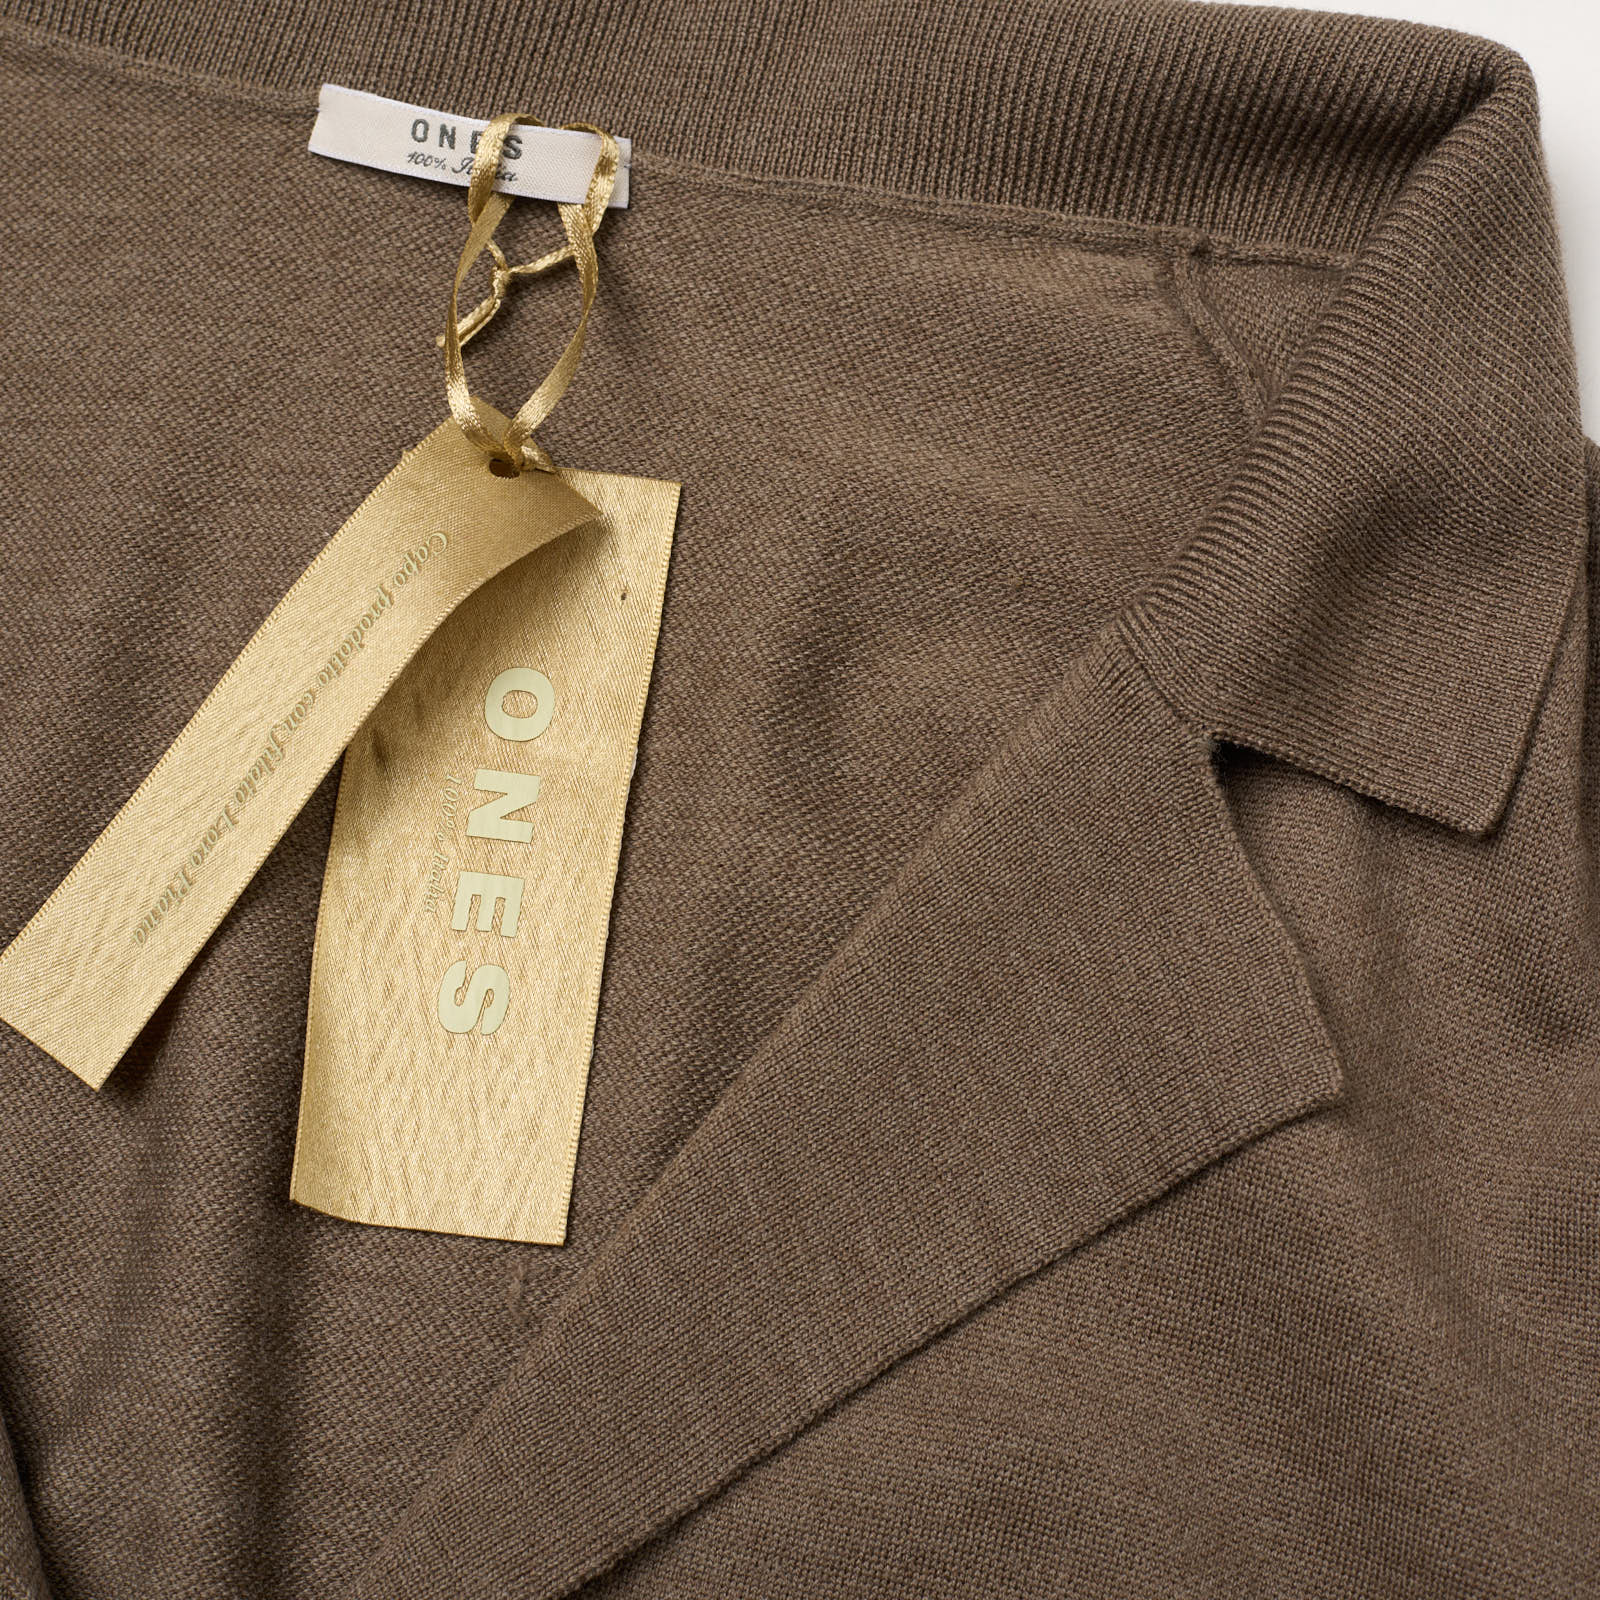 ONES Brown Loro Piana Merino Wool Super 160's Knit Cardigan Sweater EU 54 NEW US XL